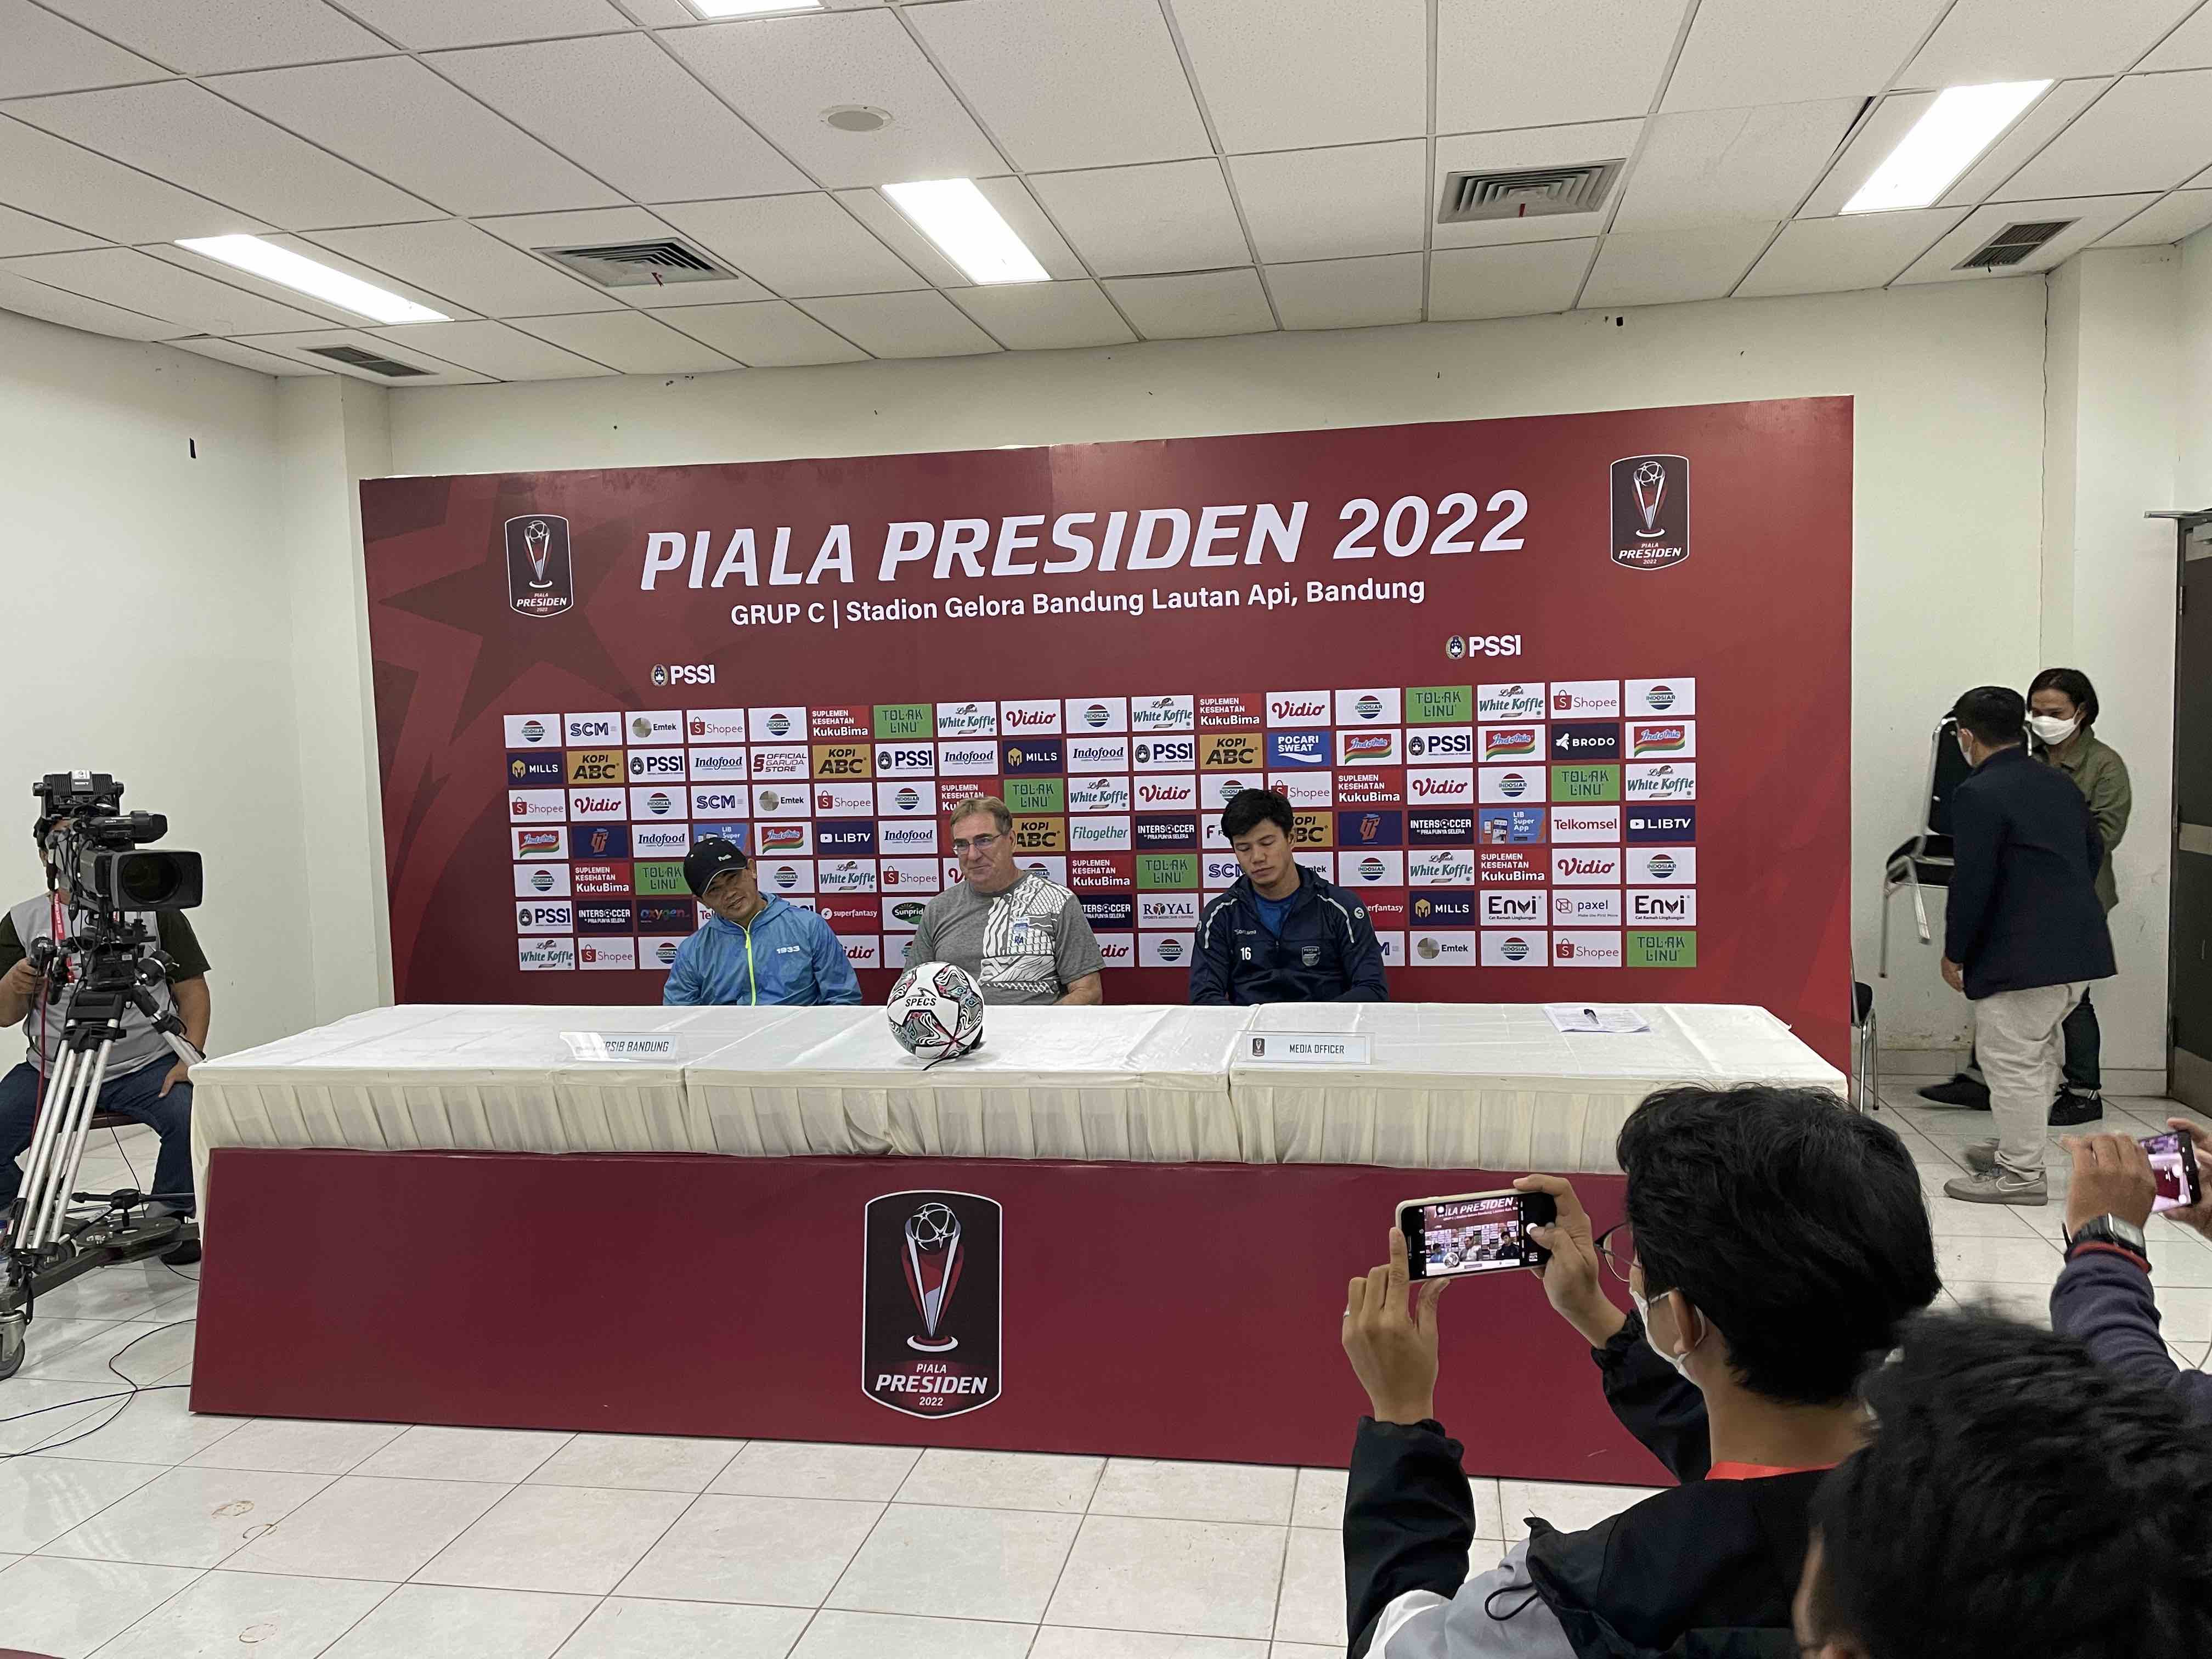 Piala Presiden 2022: Robert Rene Alberts Akui Laga Persib Bandung vs Bali United seperti Final Kompetisi Eropa